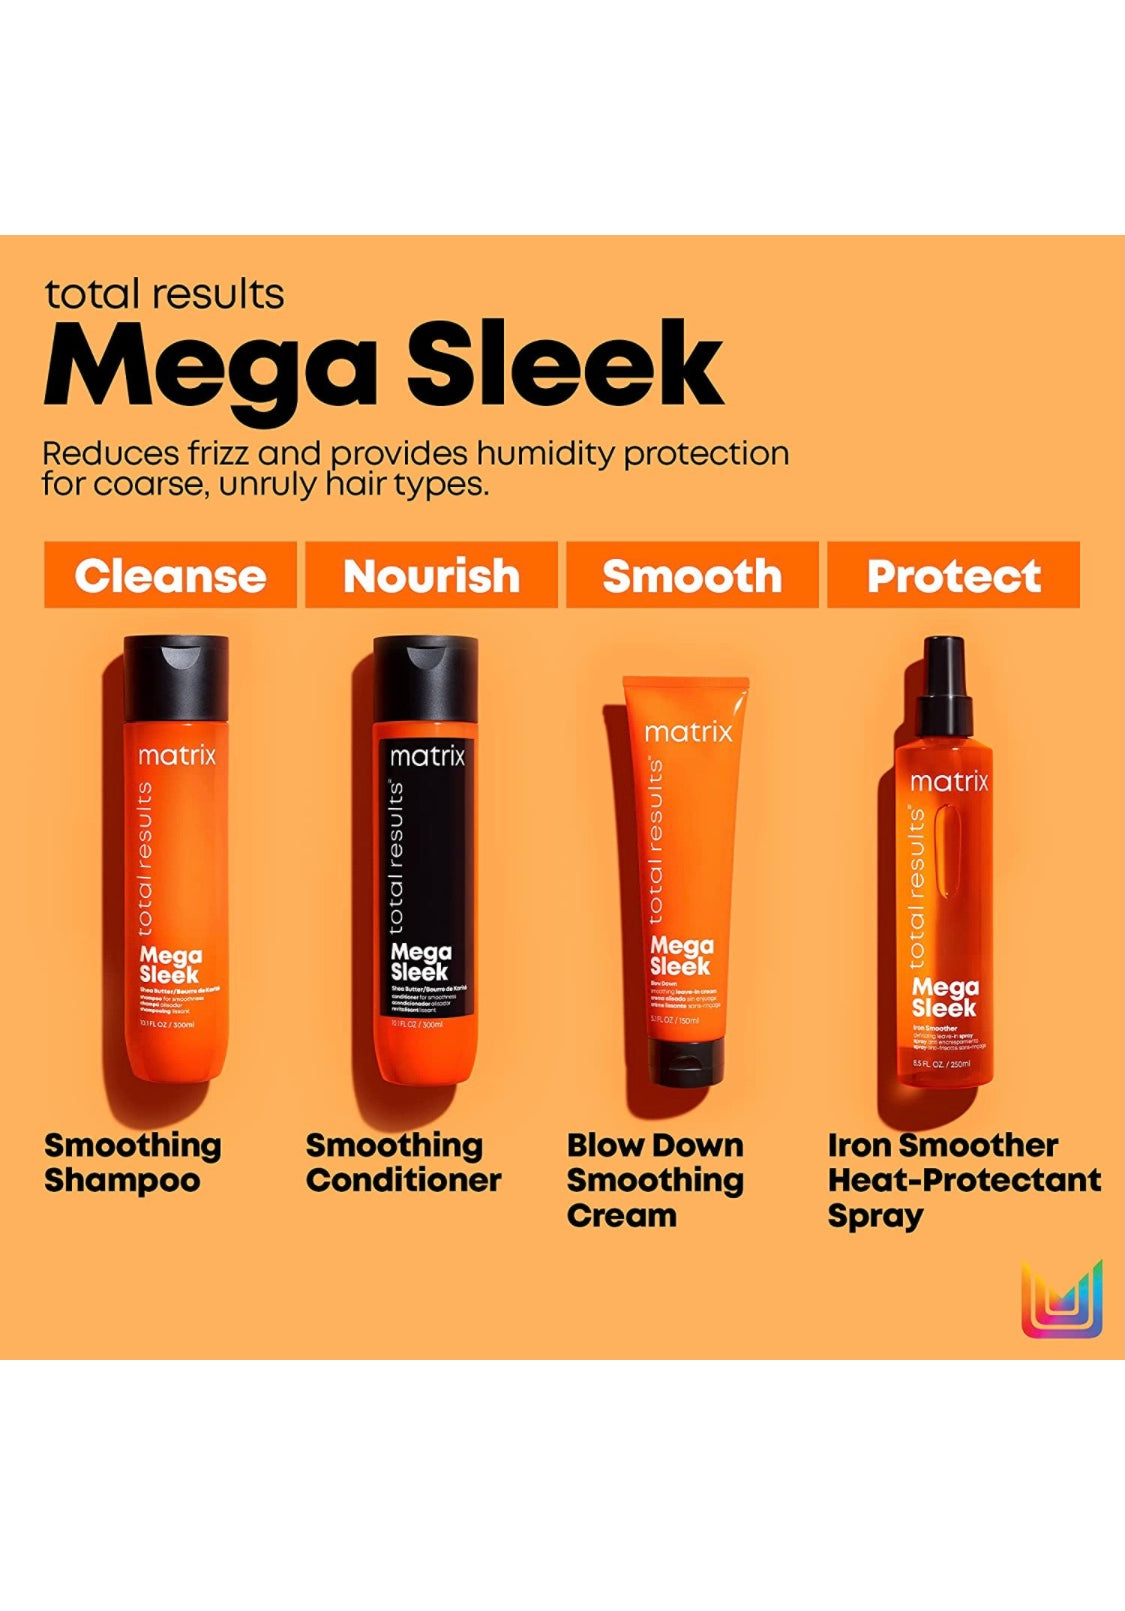 Matrix - Mega sleek shampoo 10.1 fl. oz./ 300 ml